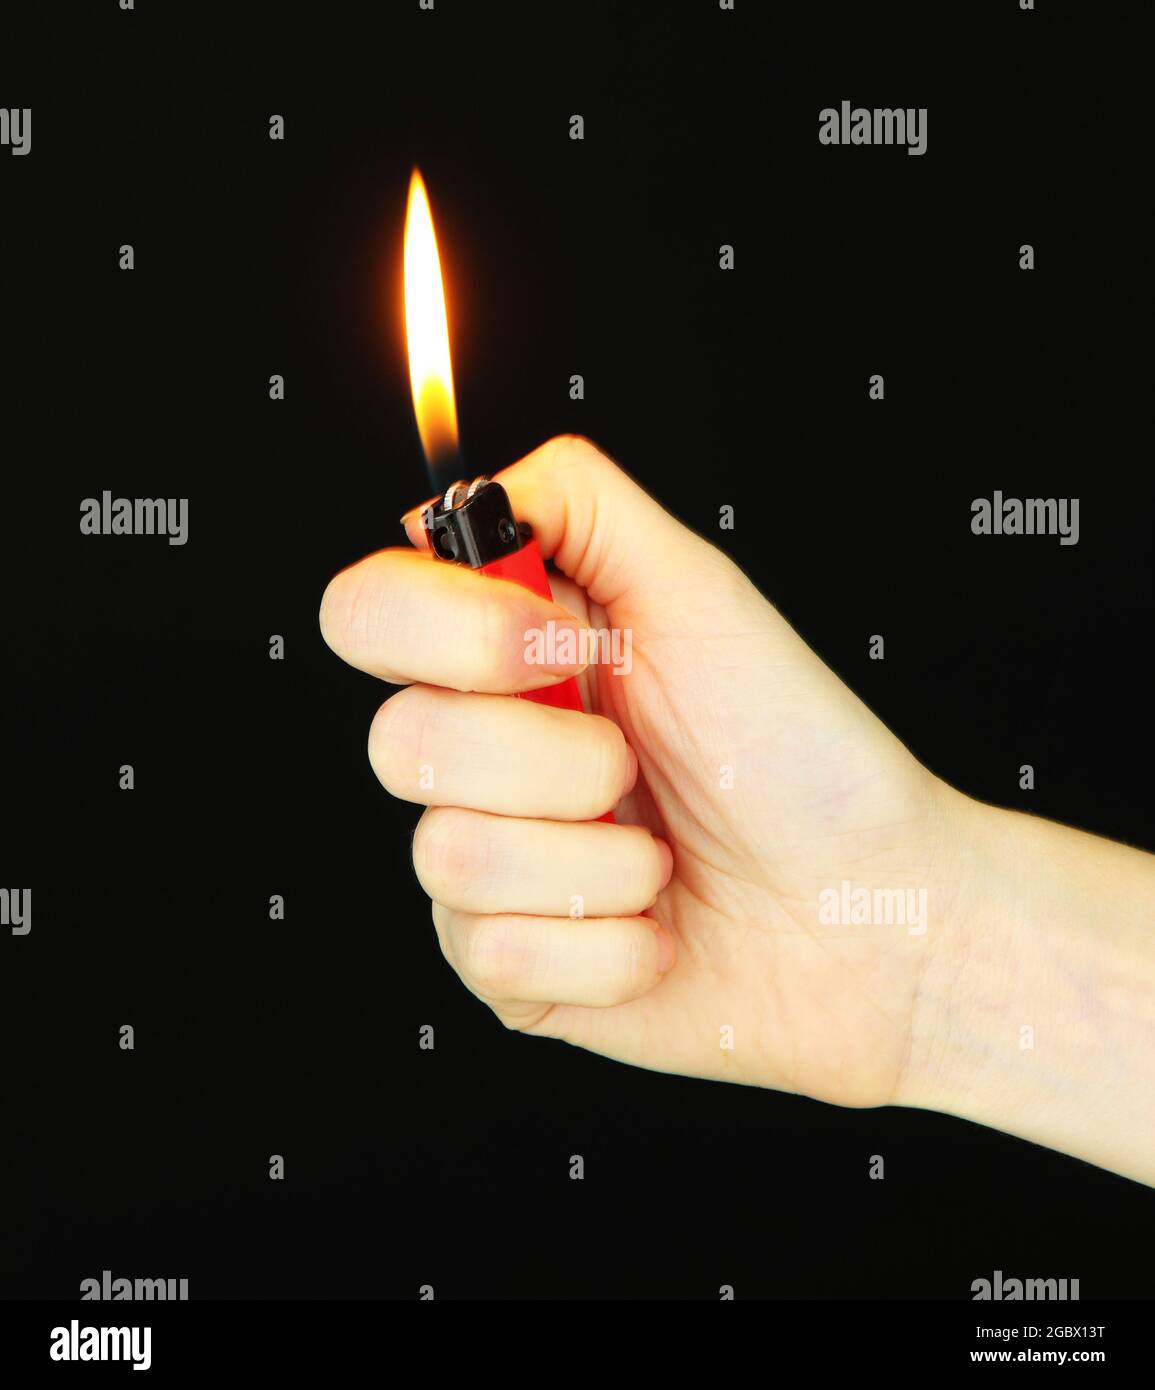 Brennendes Feuerzeug in weiblicher Hand, isoliert auf schwarz  Stockfotografie - Alamy